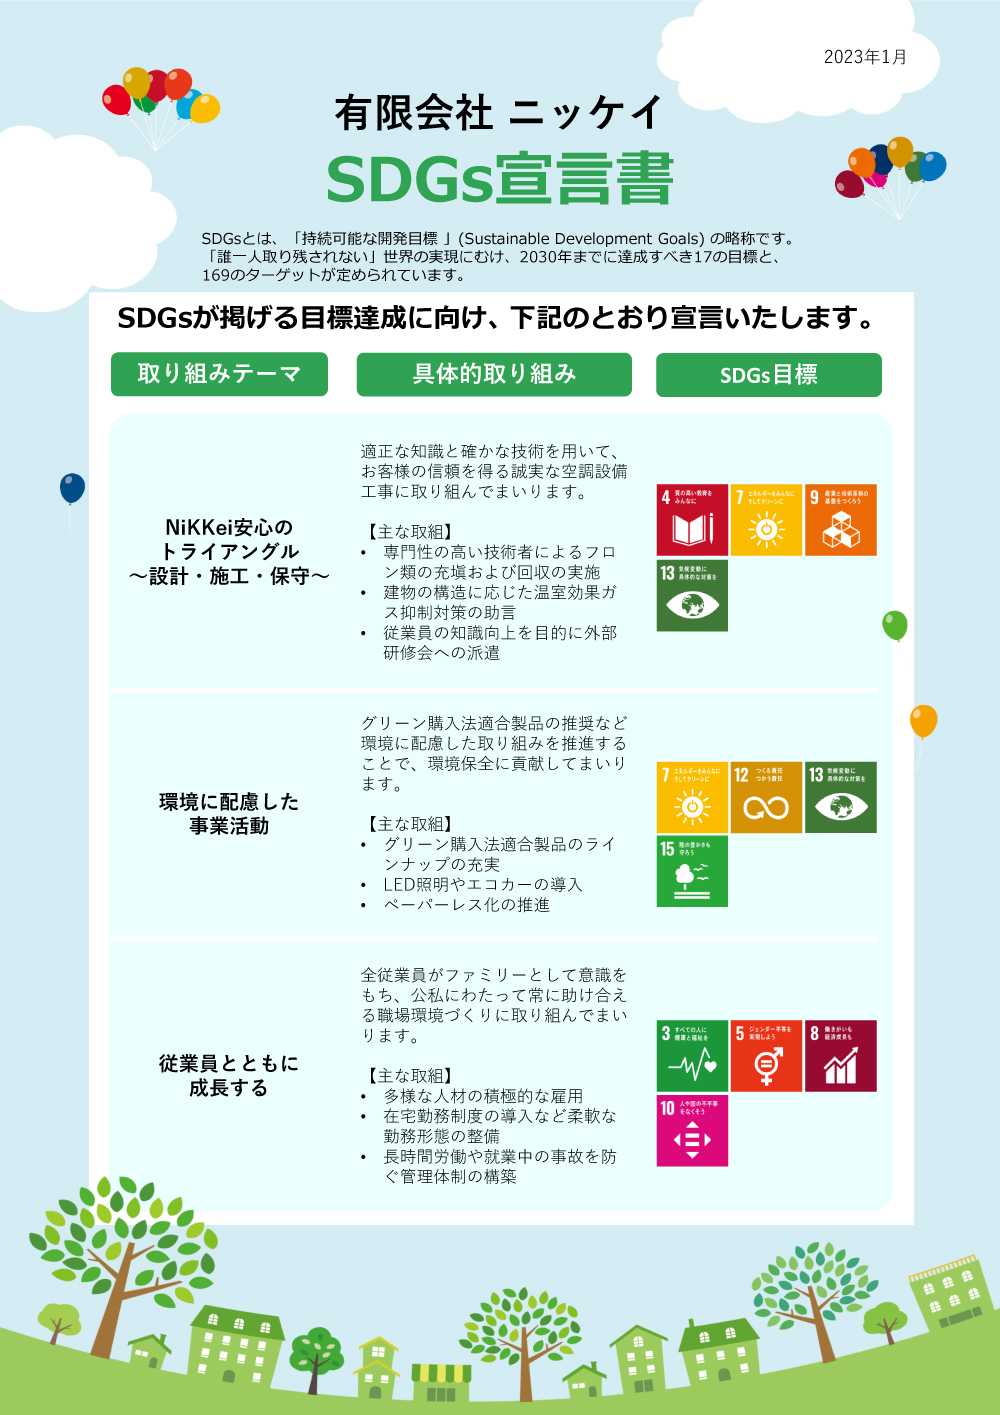 「SDGs宣言書」を発行いたしました。